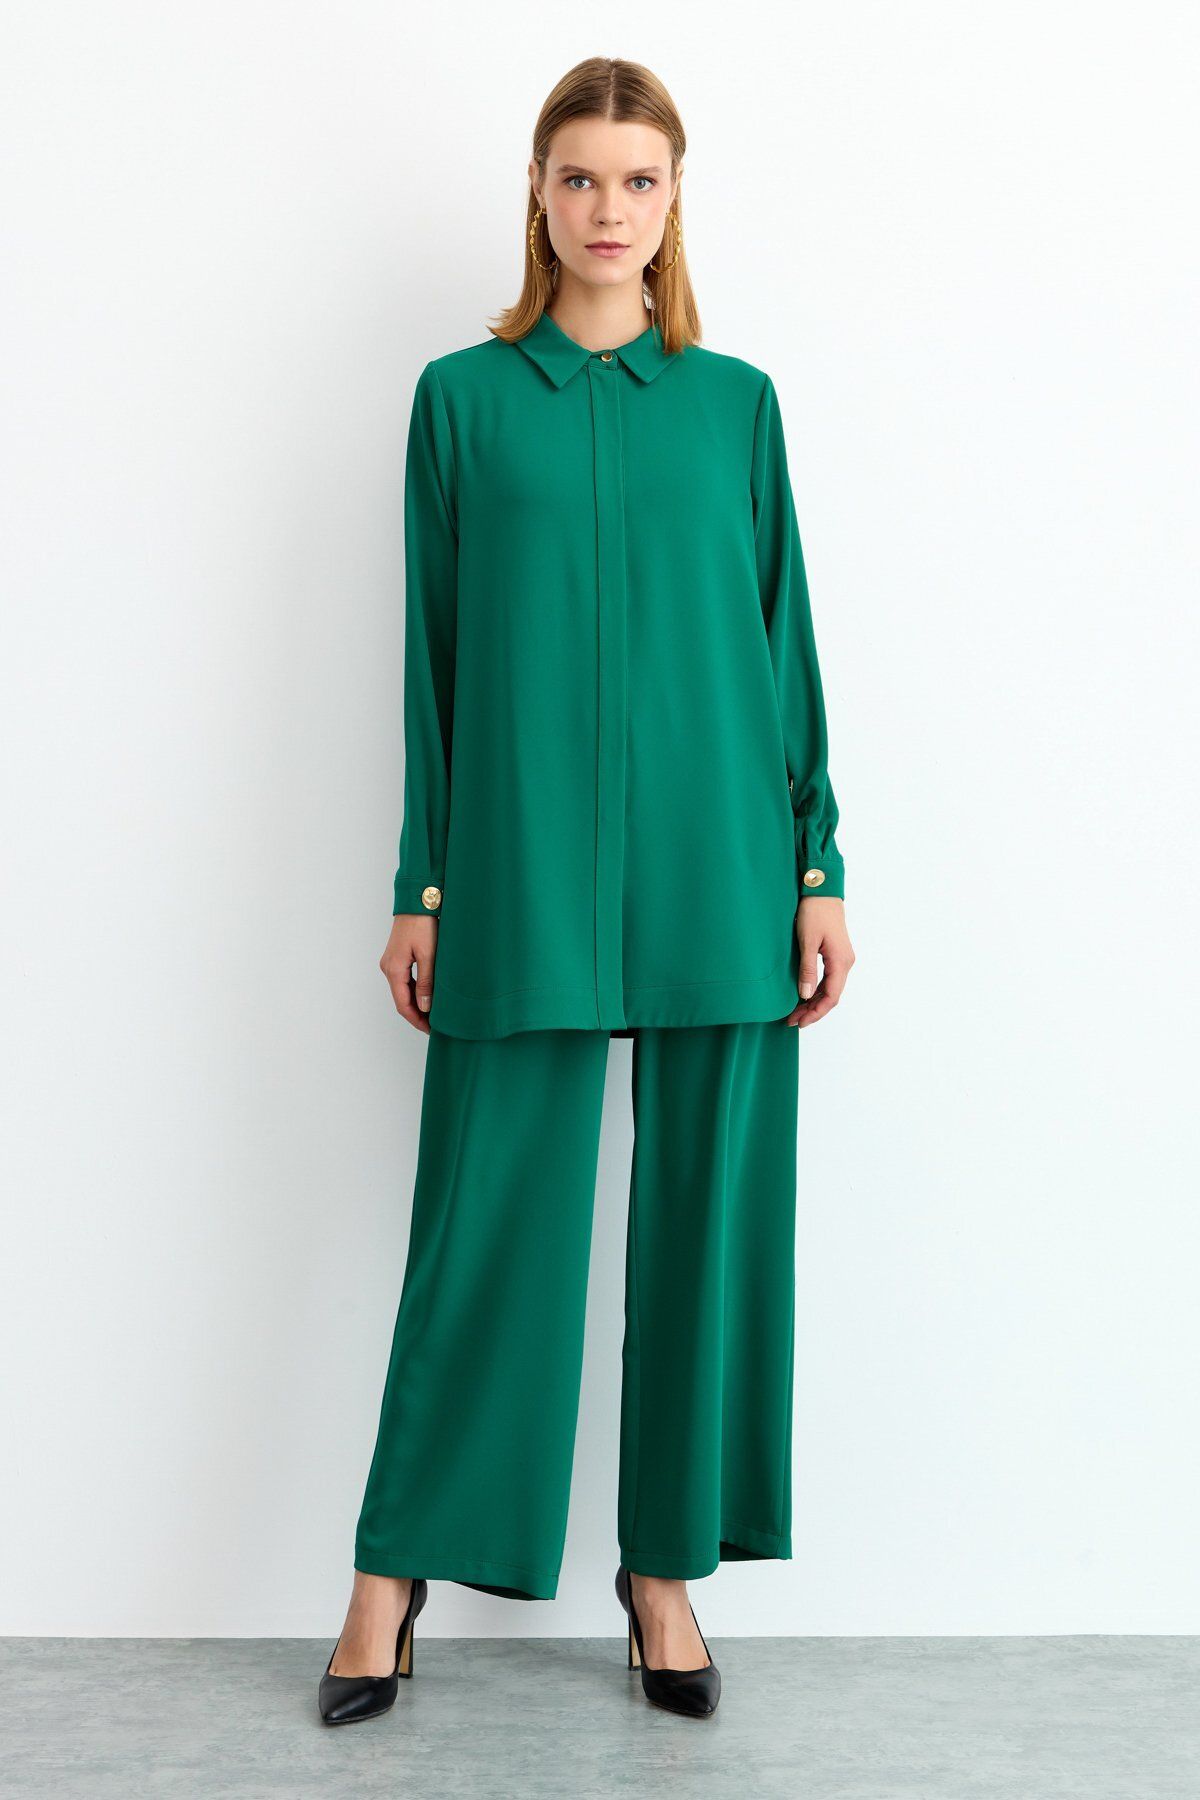 Nihan Metal Düğmeli Pantolon Tunik Takım Benetton Yeşili